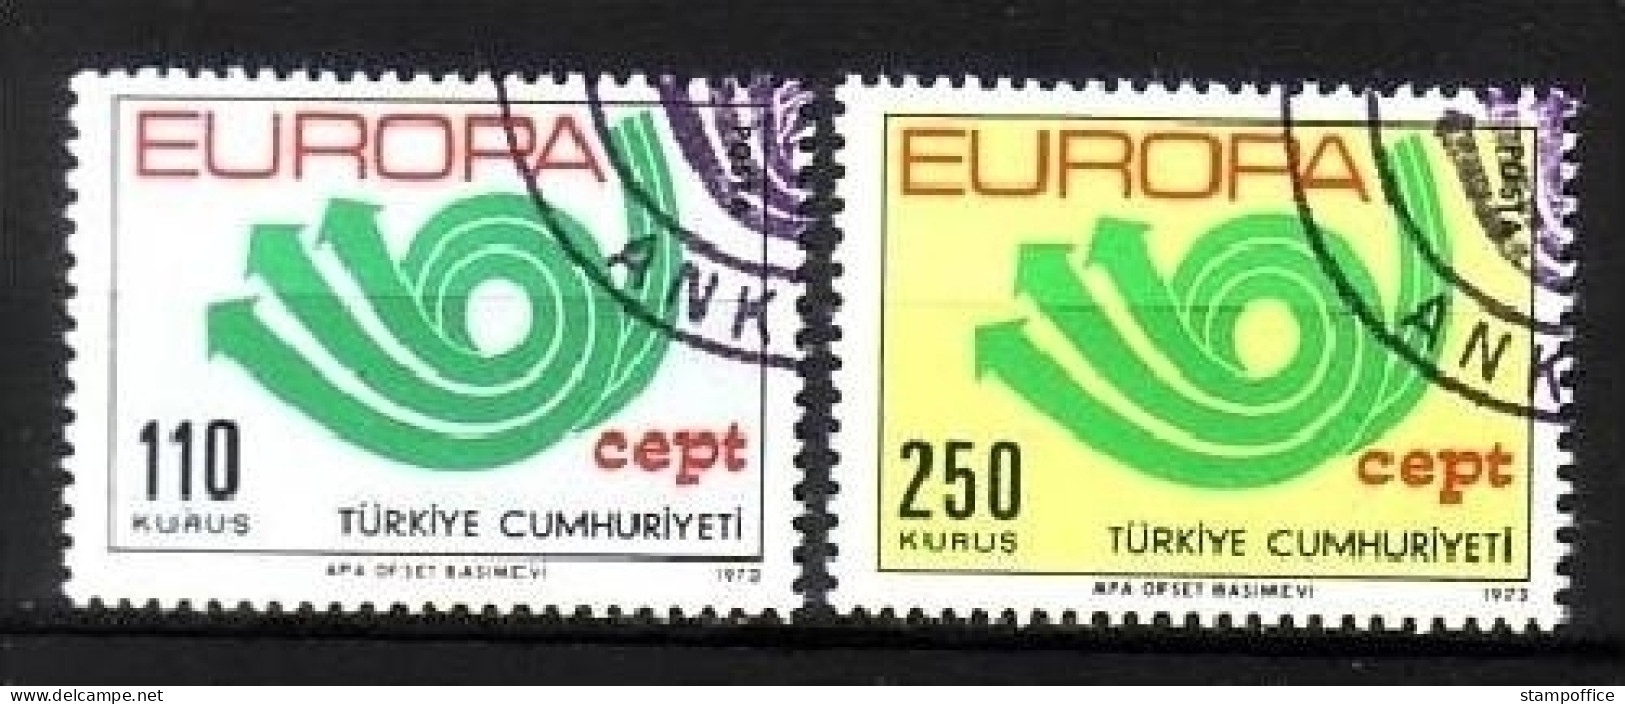 TÜRKEI MI-NR. 2280-2281 GESTEMPELT(USED) EUROPA 1973 POSTHORN - 1973